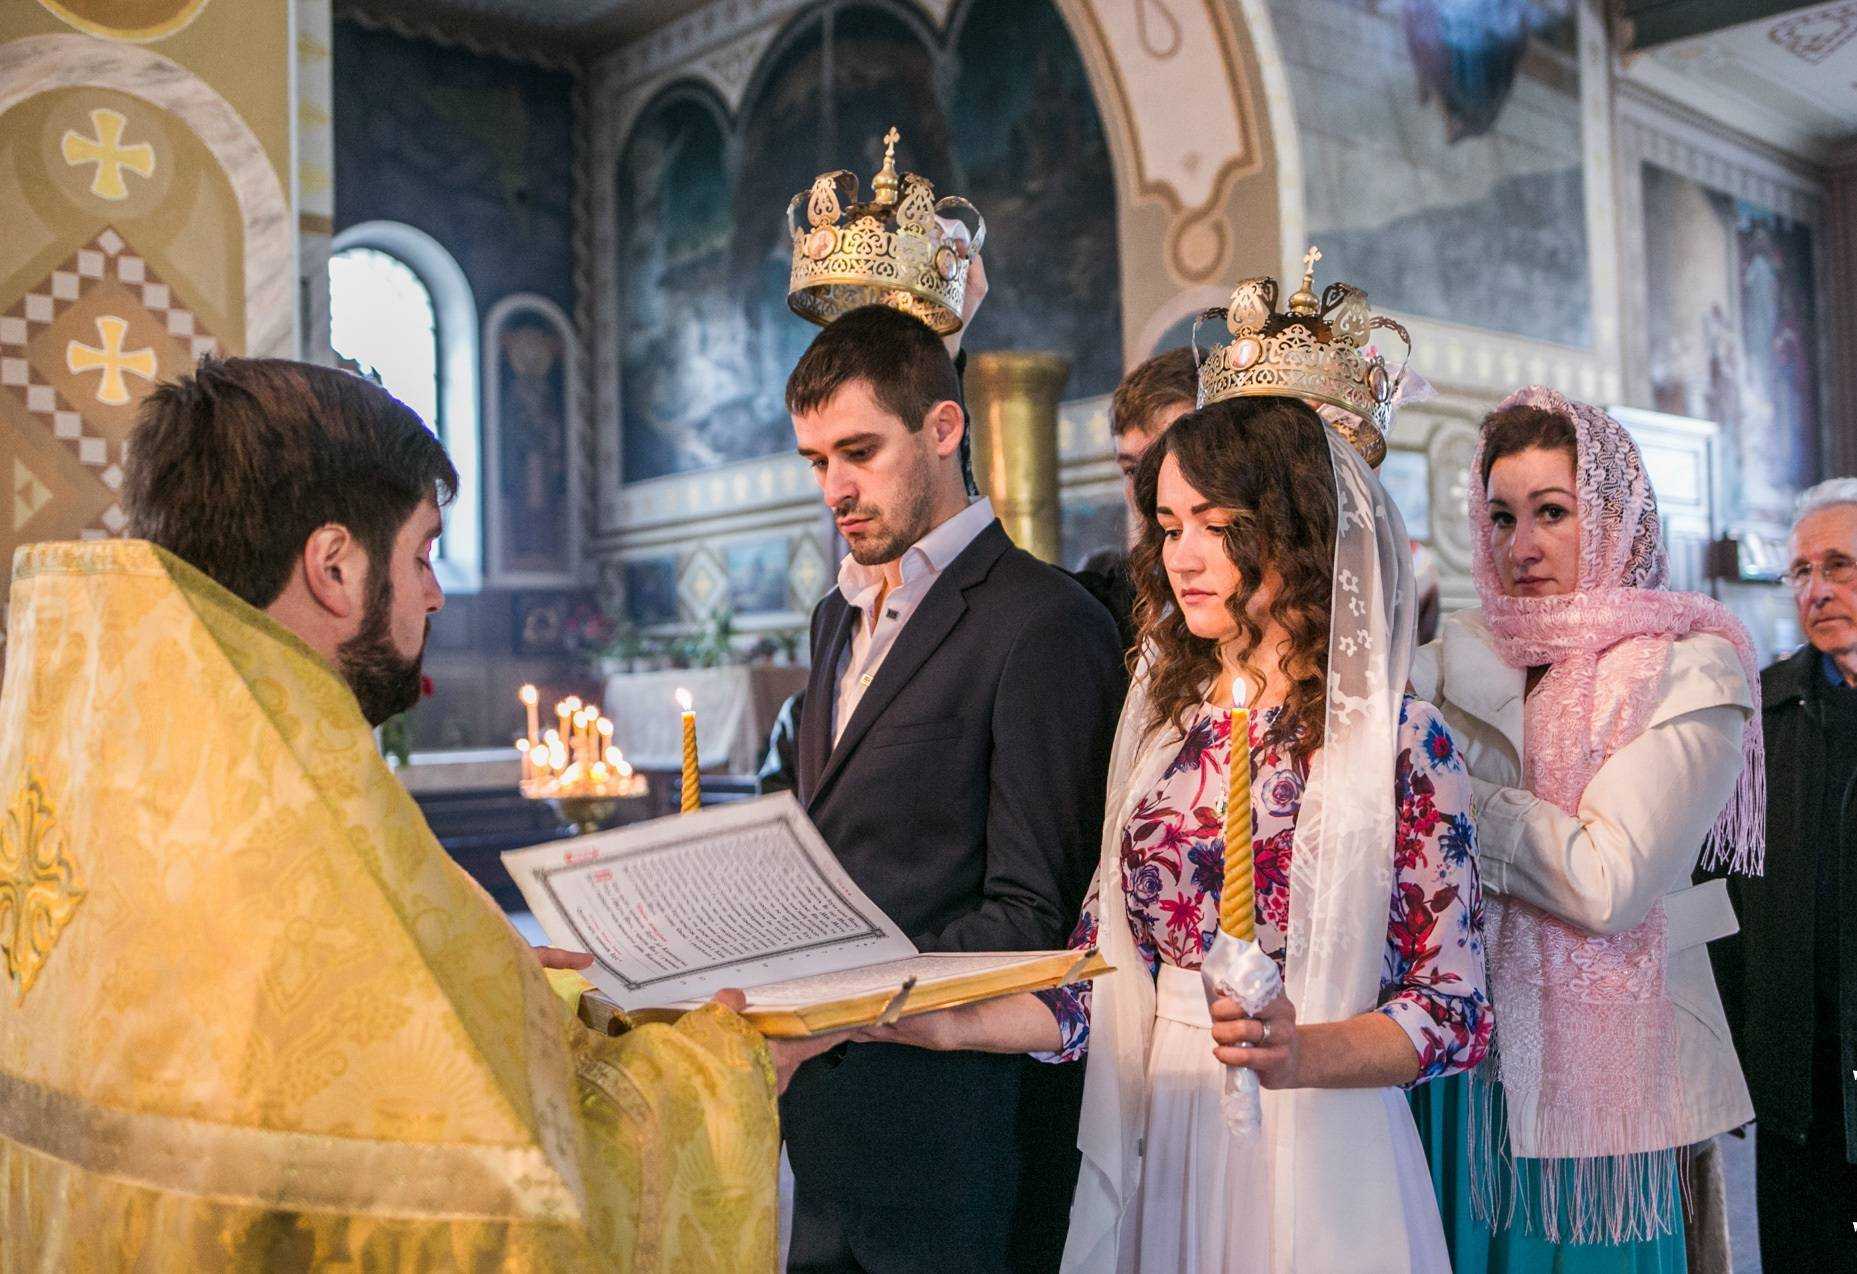 Венчание в православной церкви — все этапы таинства обряда. когда могут быть препятствия венчанию?